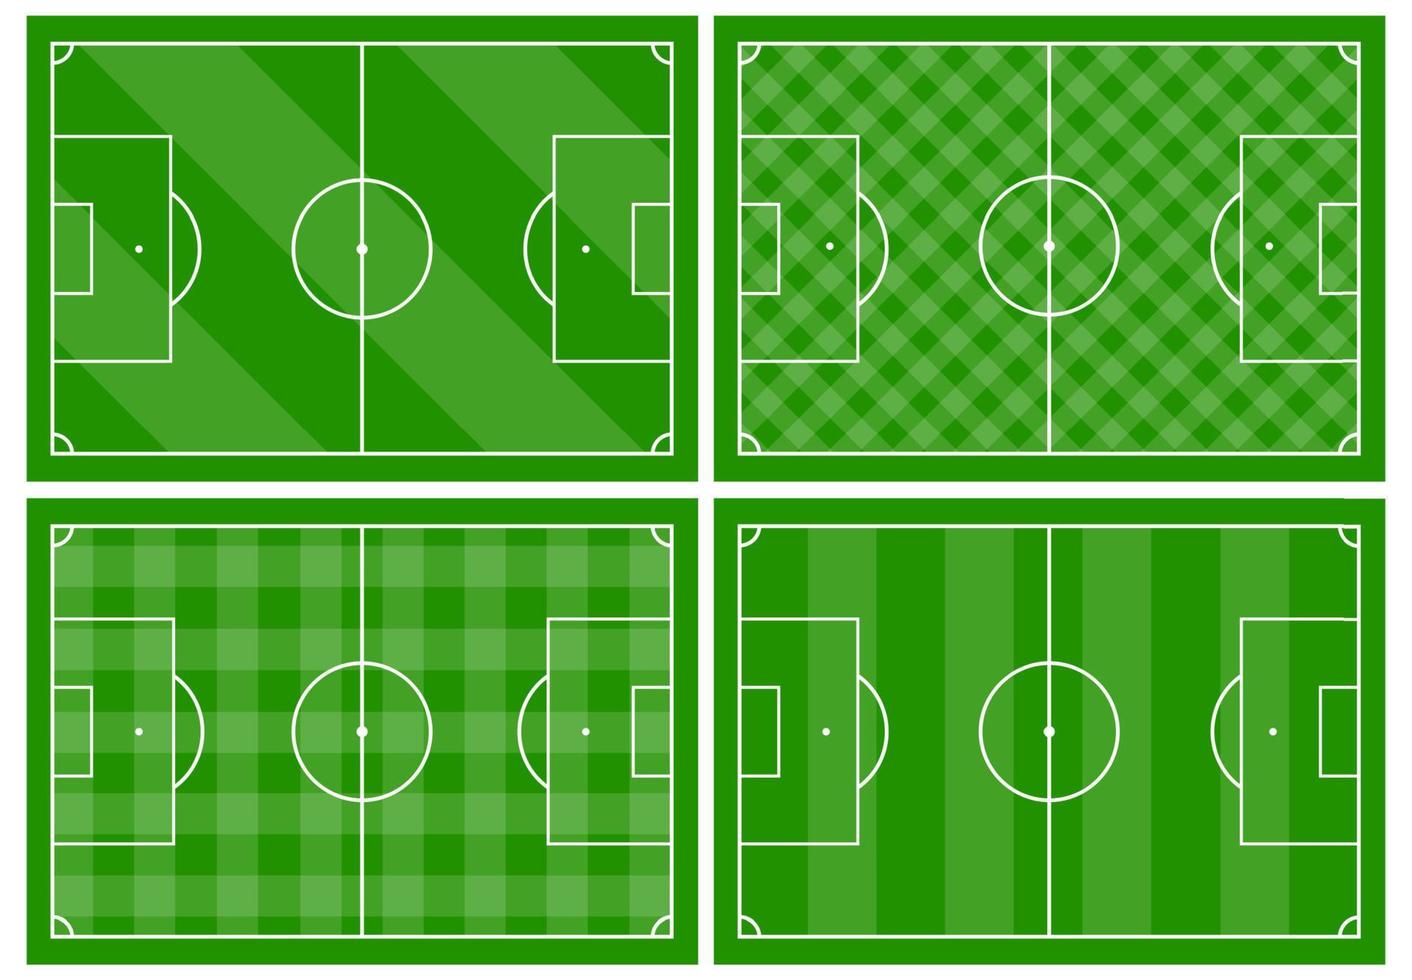 conjunto de cuatro fútbol americano campos con diferente verde césped adornos fútbol campo para jugando. vector ilustración